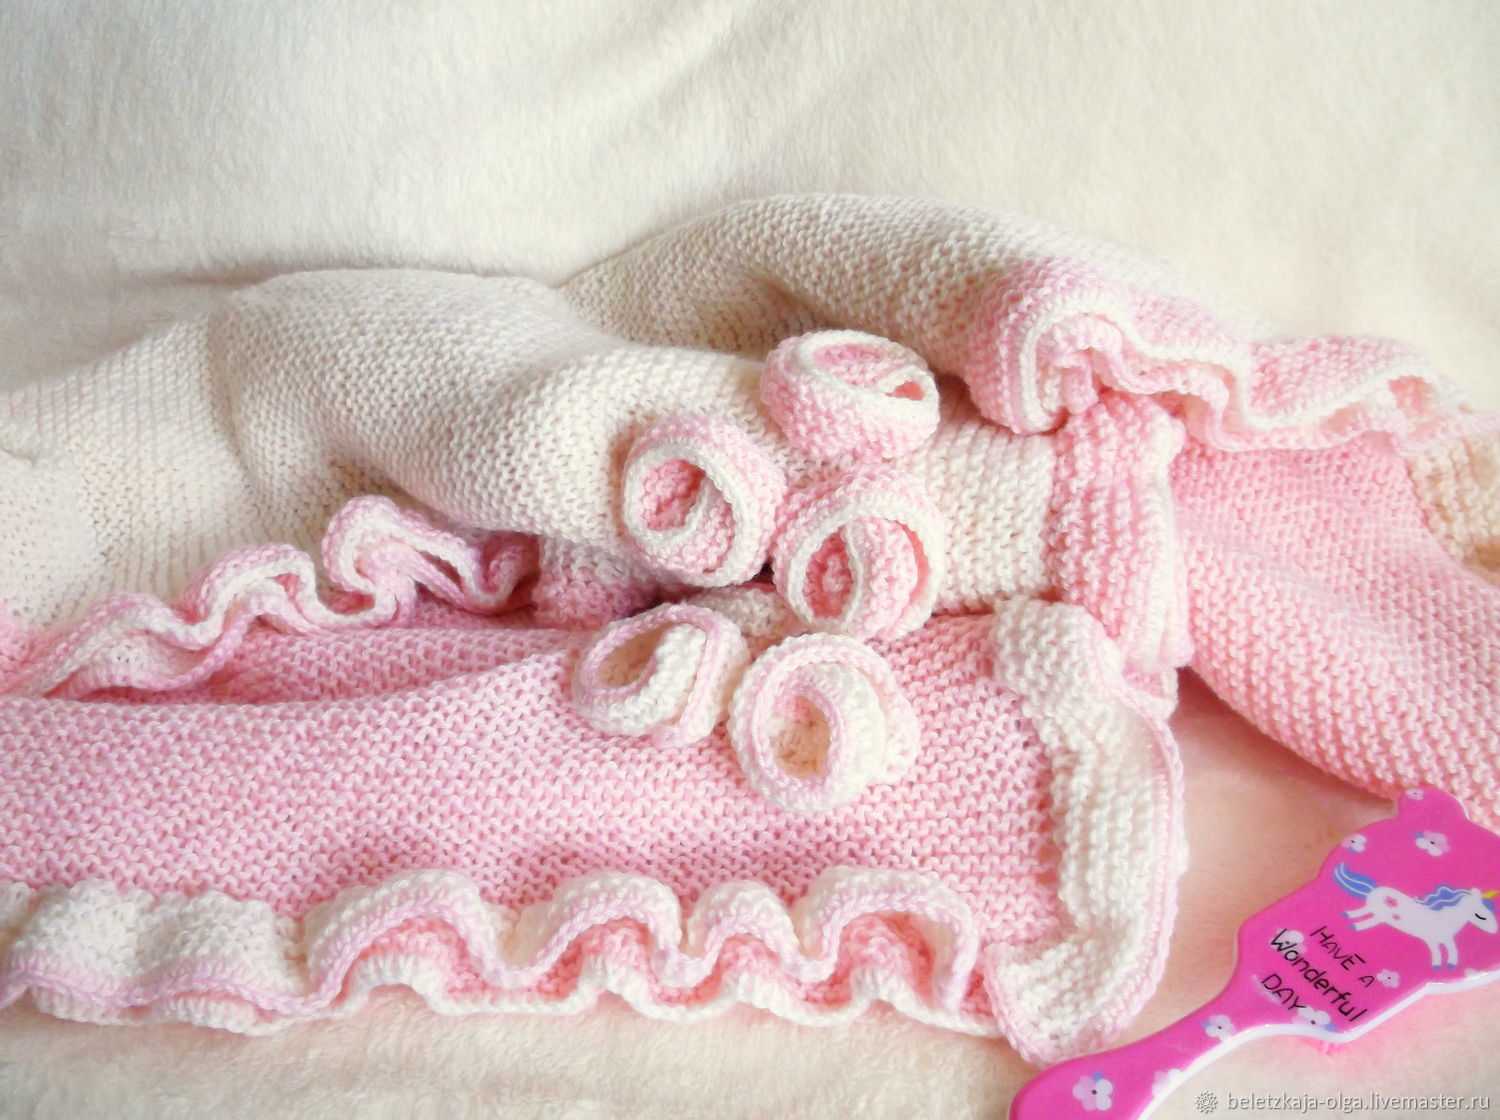 Одеяло на выписку: размер вязаного, флисового, шерстяного пледа для новорожденного в кроватку из роддома - размеры одеялок